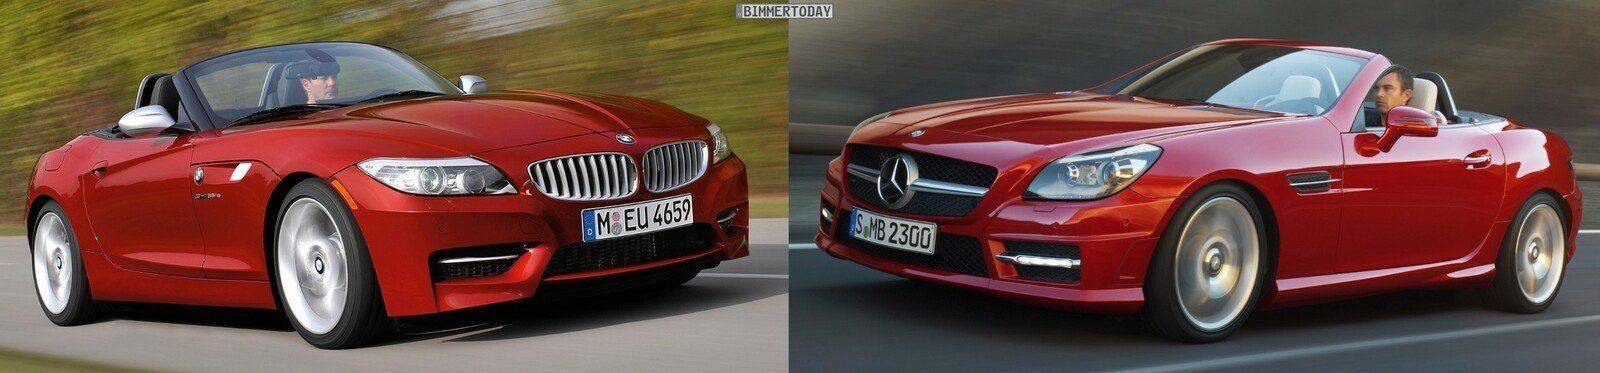 BMW-Z4-E89-Mercedes-SLK-R172-Front-schraeg.jpg